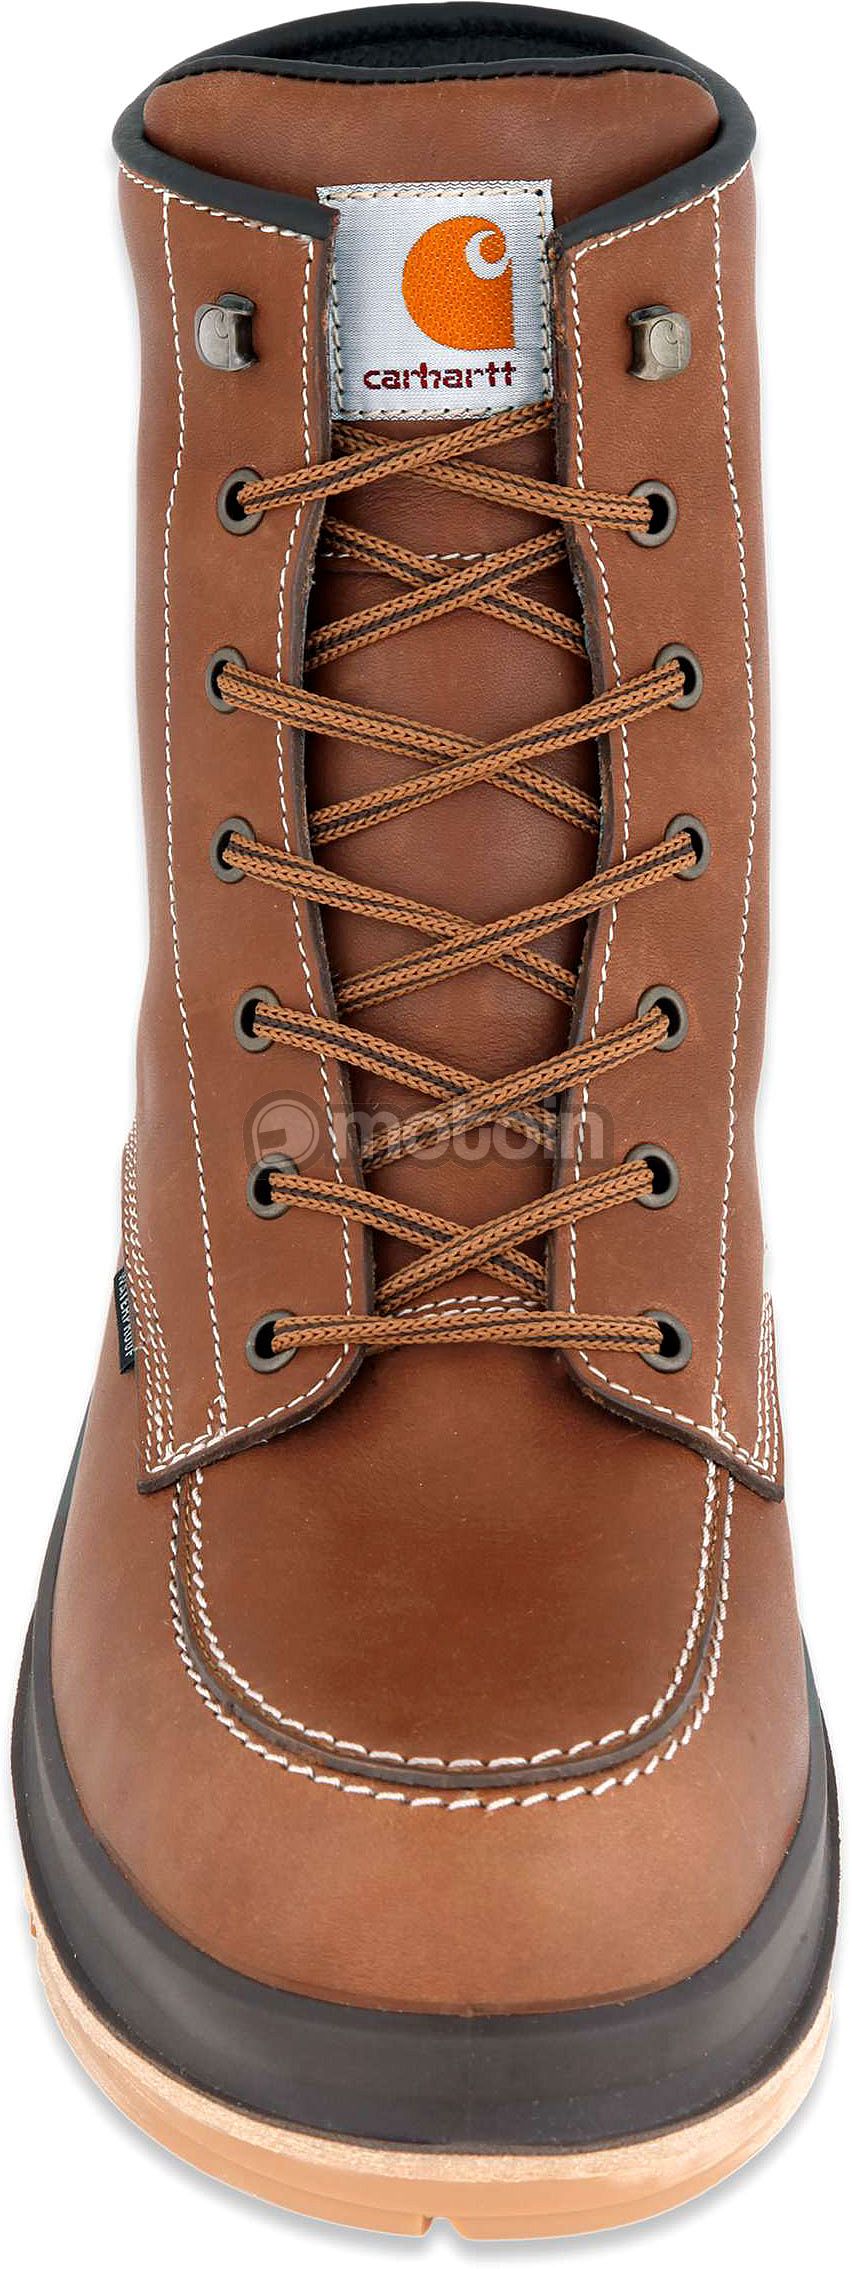 carhartt hamilton boots